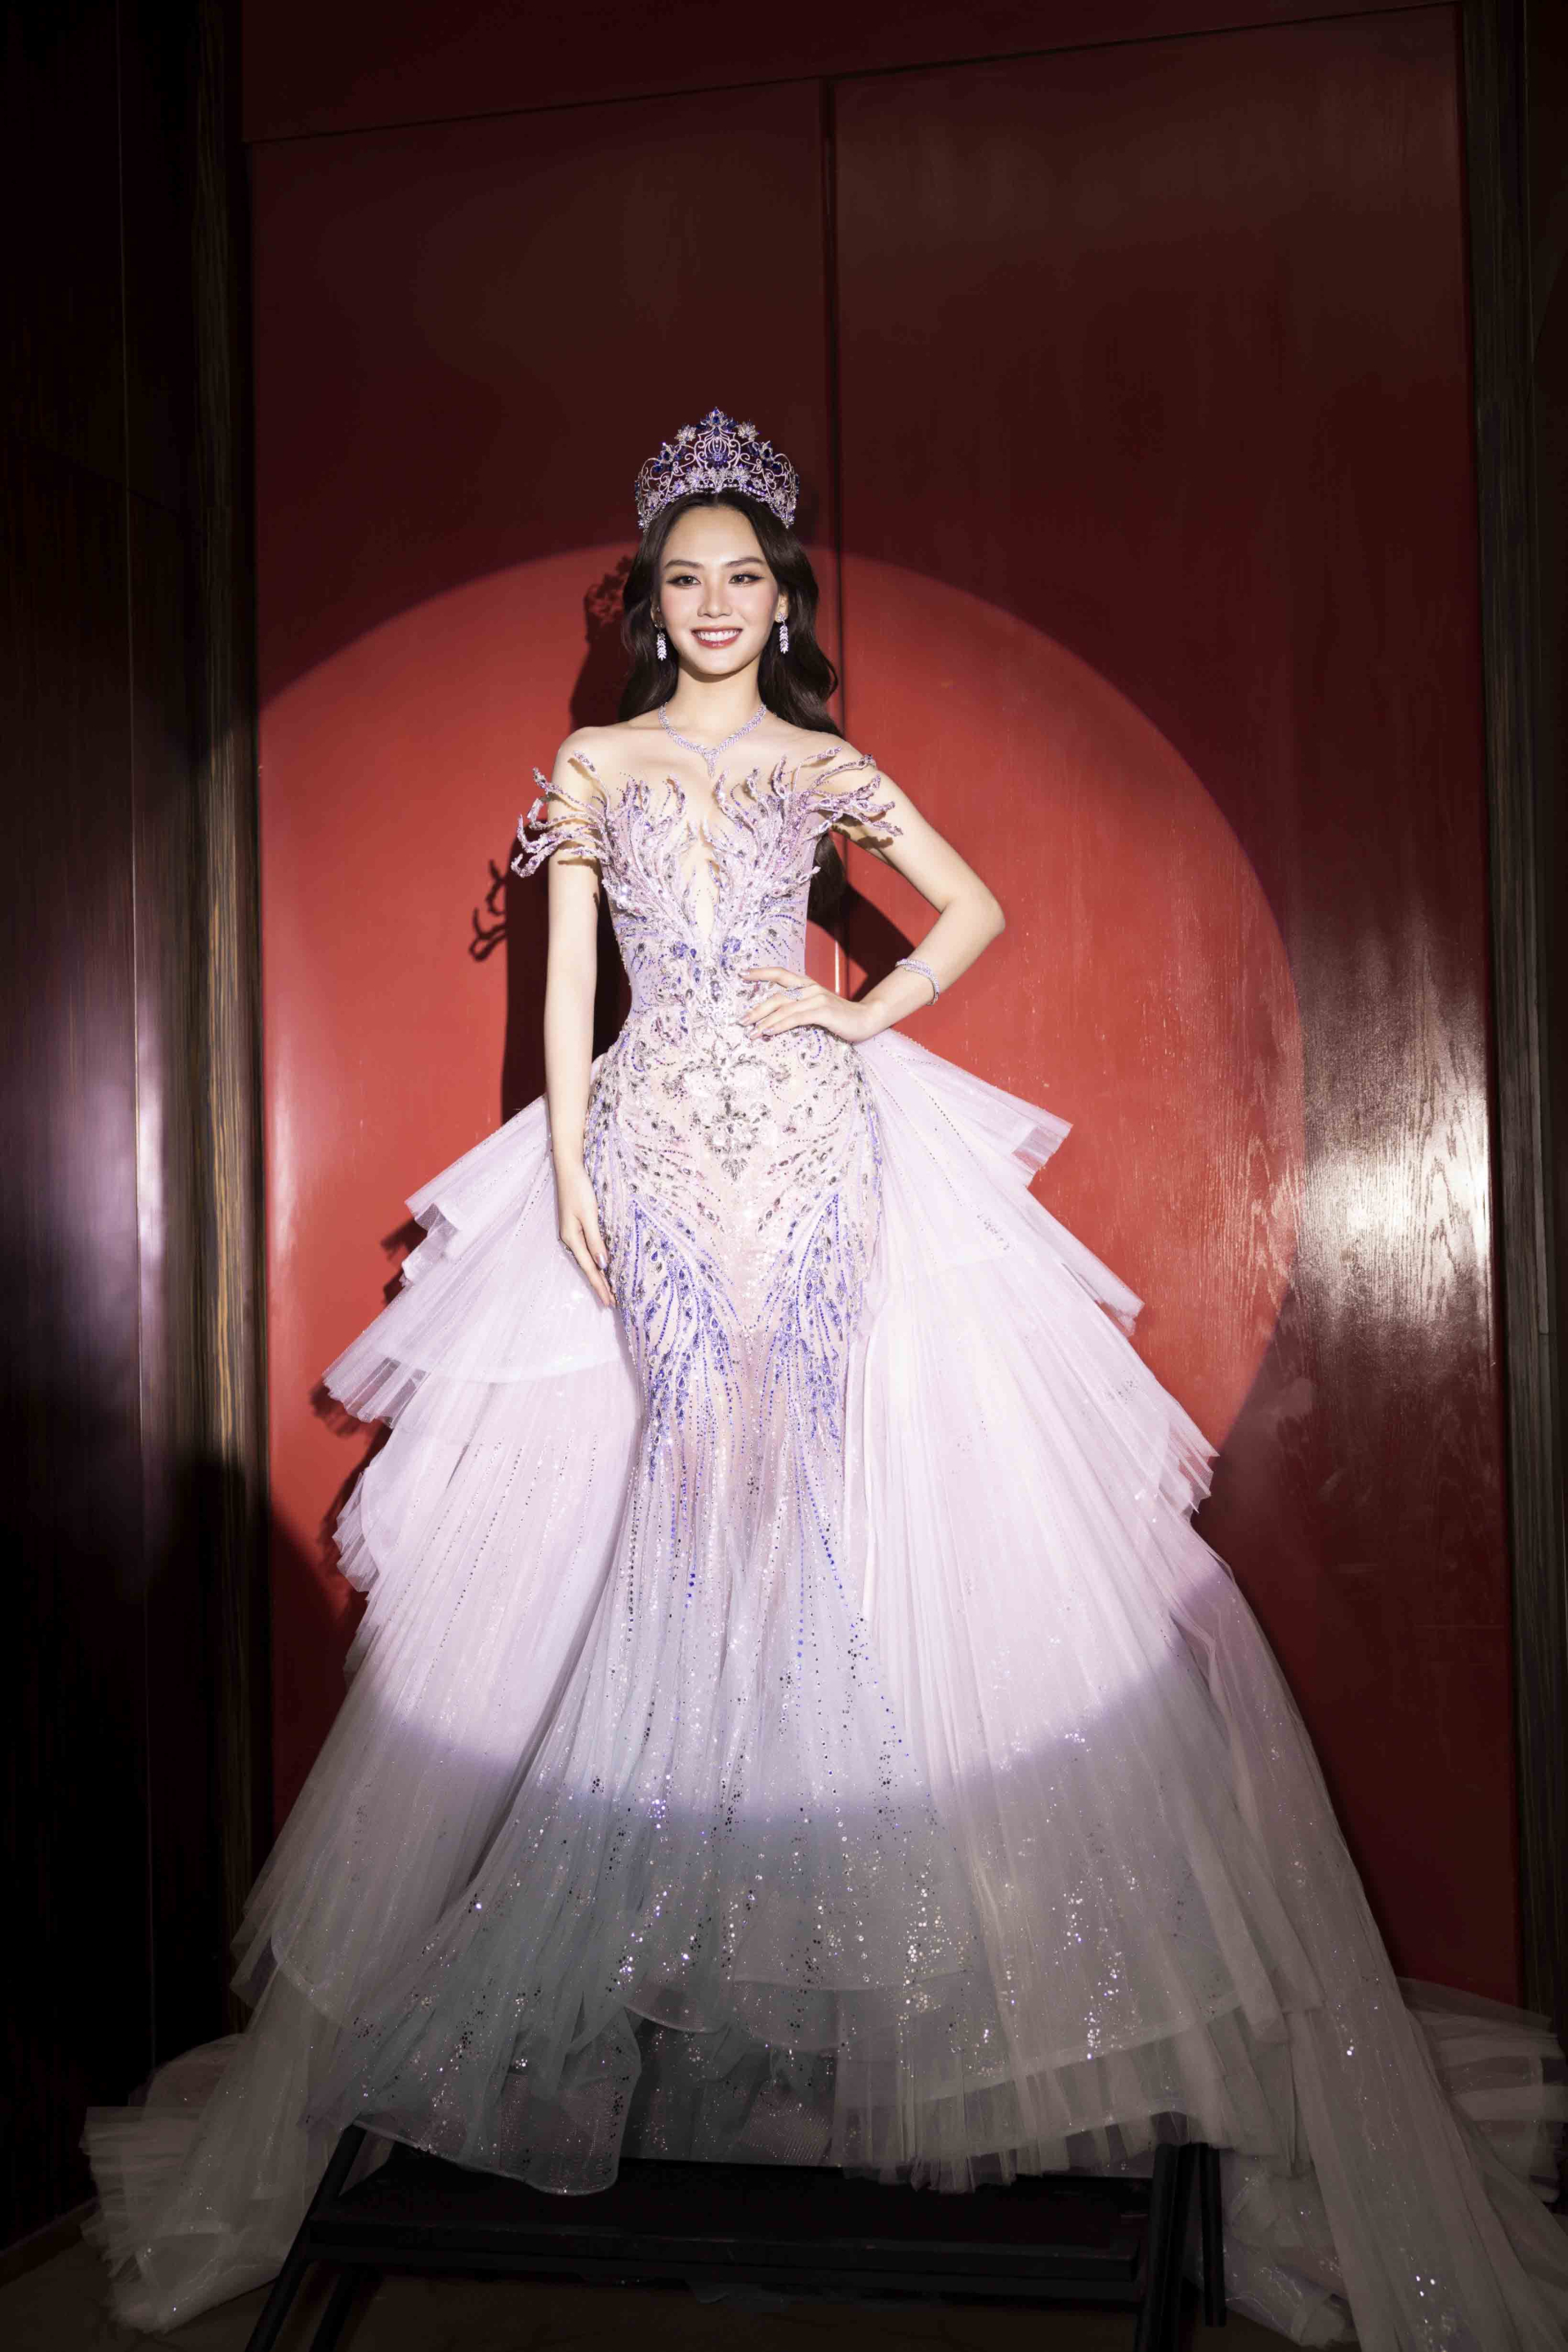 Toàn cảnh lễ trao sash của Hoa hậu Mai Phương, nhan sắc và tài năng ngày càng thăng hạng - ảnh 4